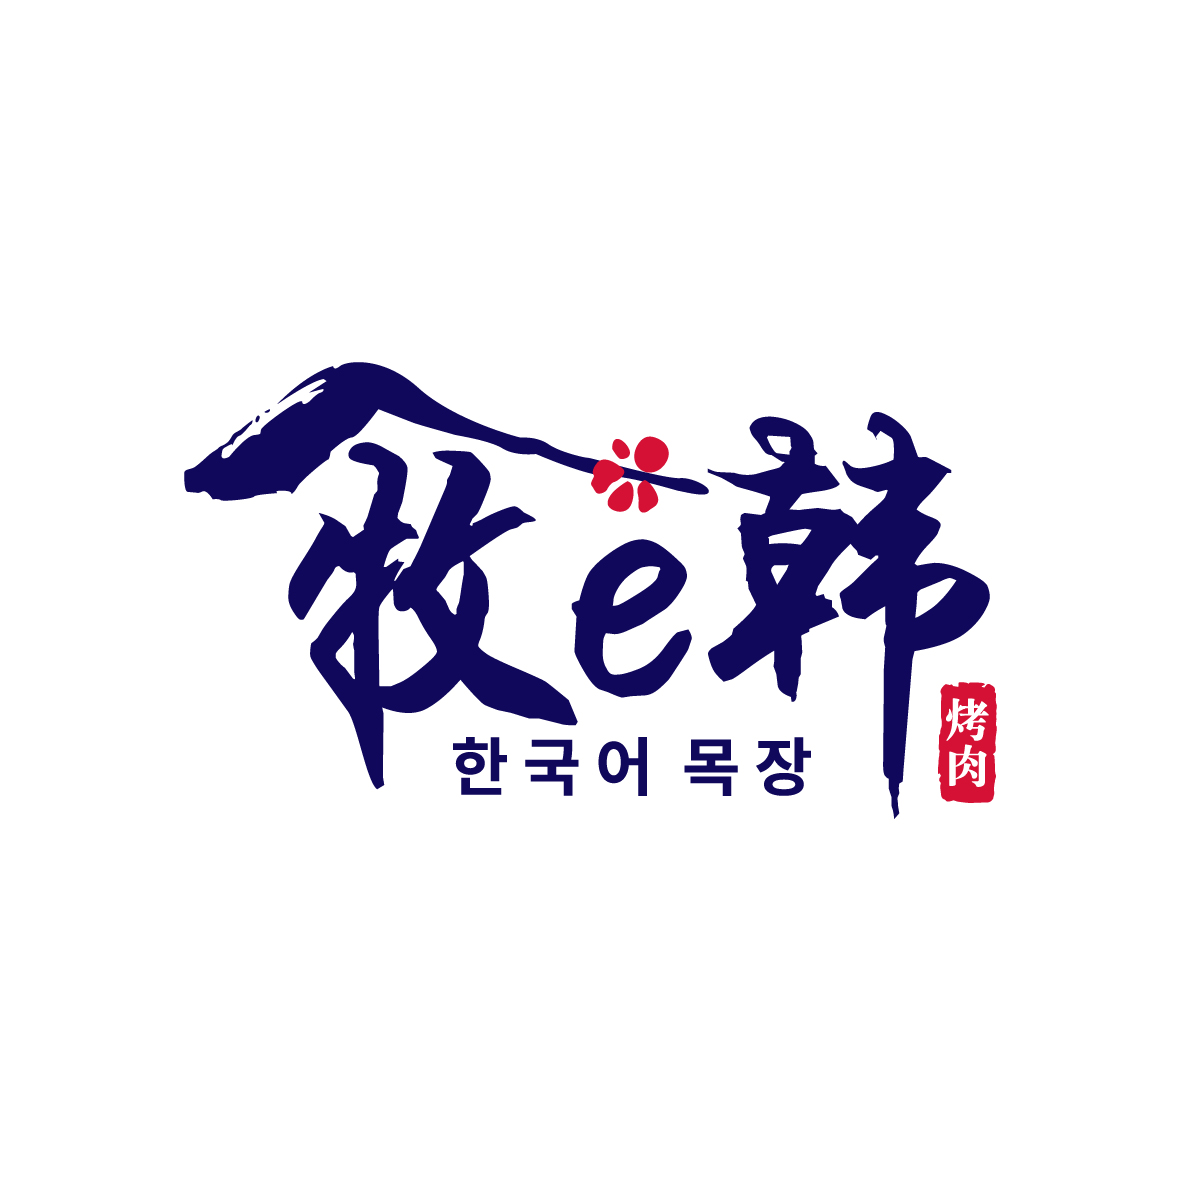 广州市至拓创意家居有限公司商标牧E韩（43类）商标转让费用及联系方式